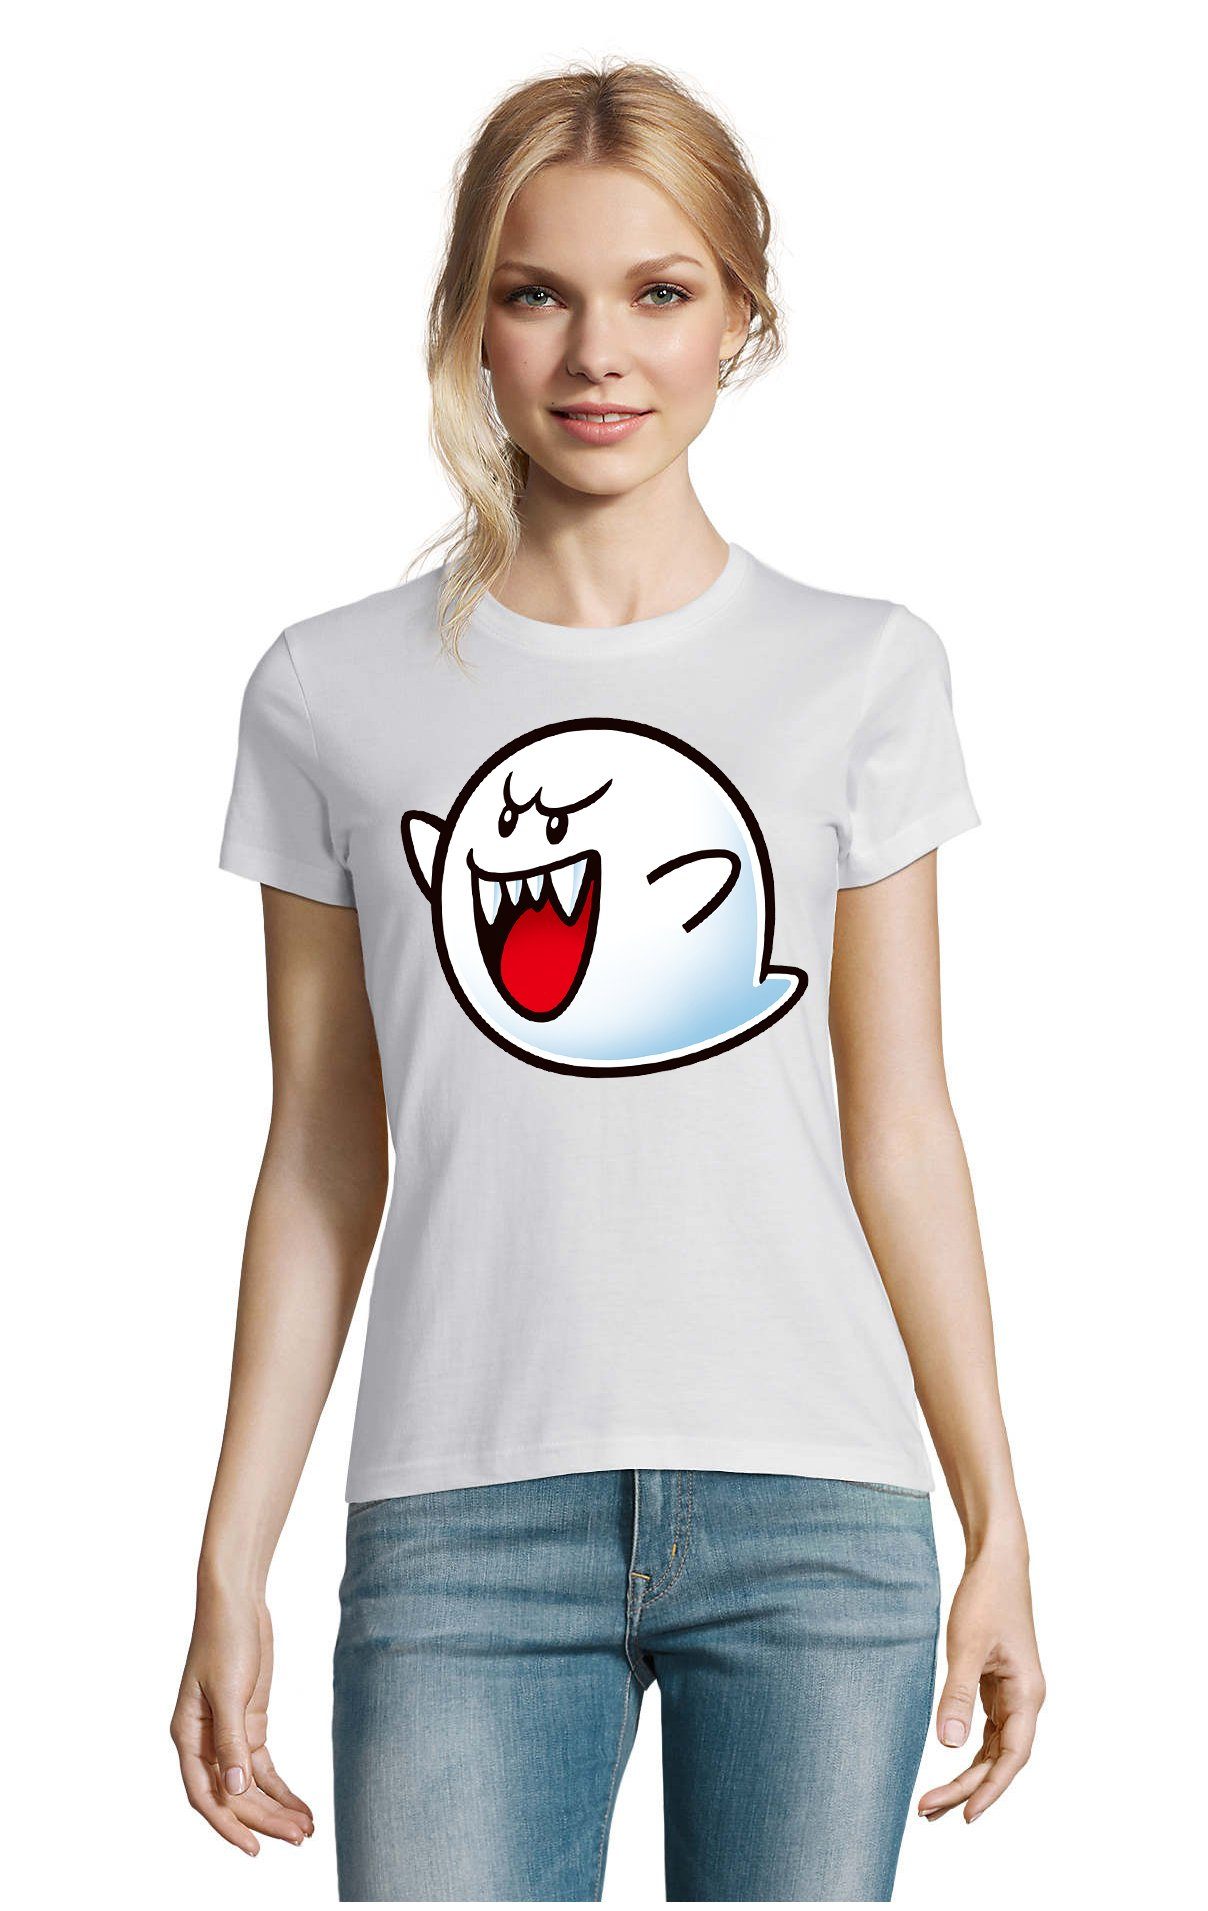 Konsole Super Gespenst Weiss Nintendo Blondie Brownie Mario Boo T-Shirt & Geist Damen